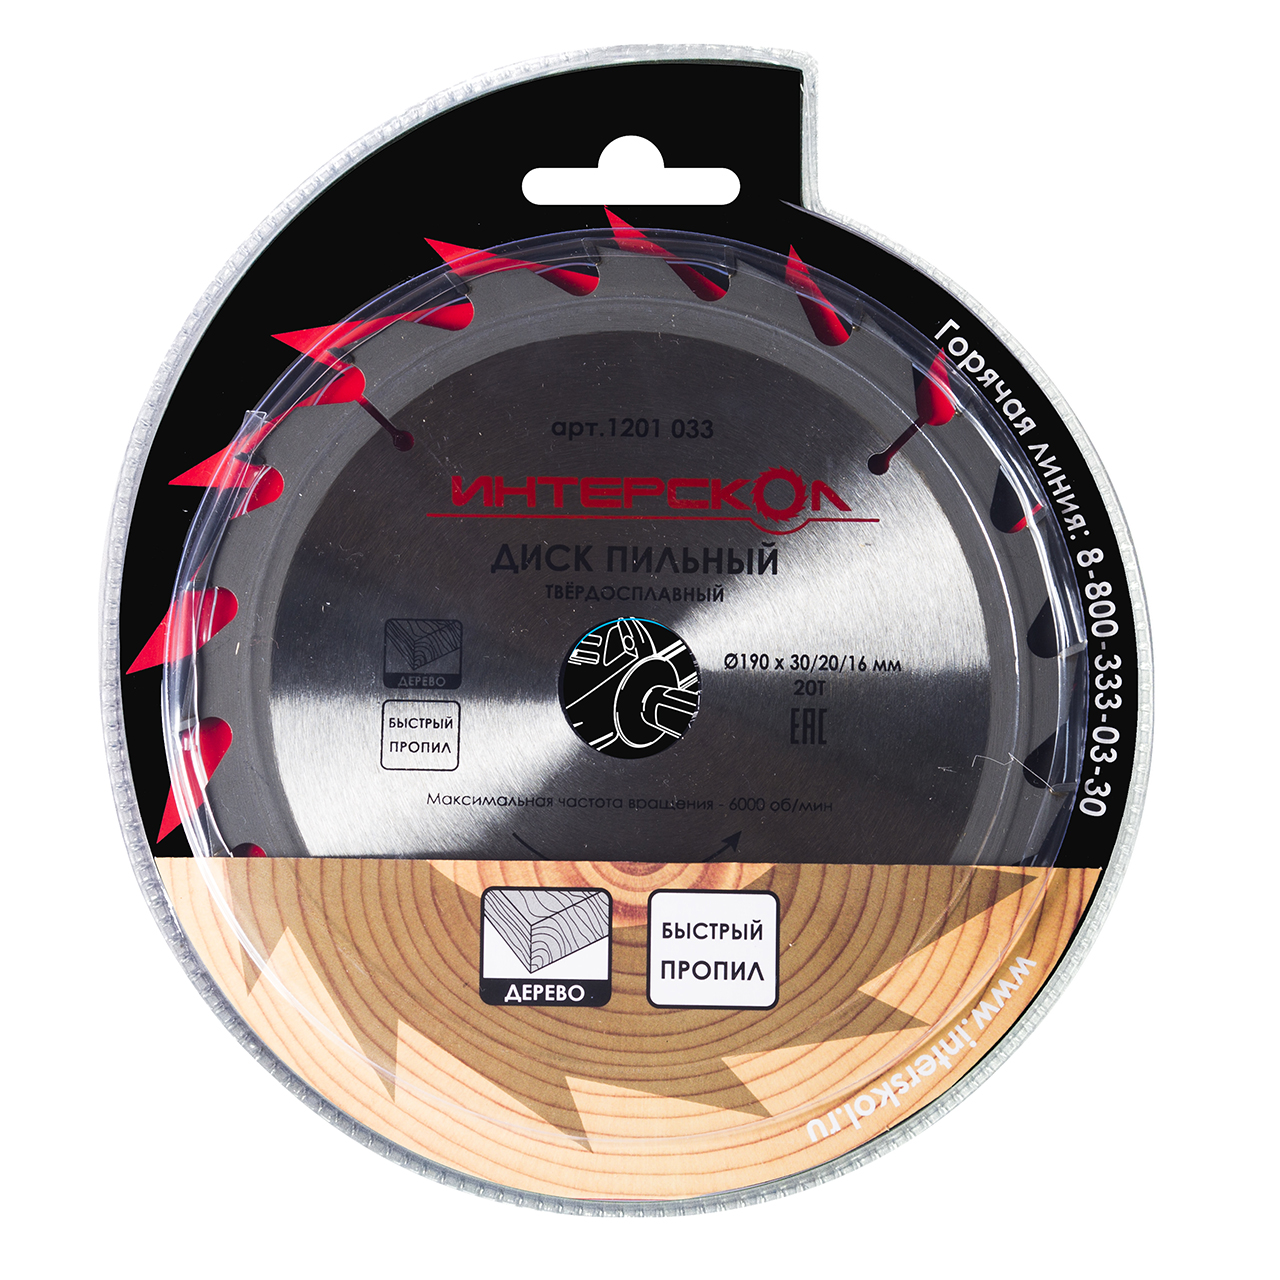 Диски пильные для дисковых и торцовочных пил ИНТЕРСКОЛ Пильный диск по дереву (быстрый пропил) 190 мм